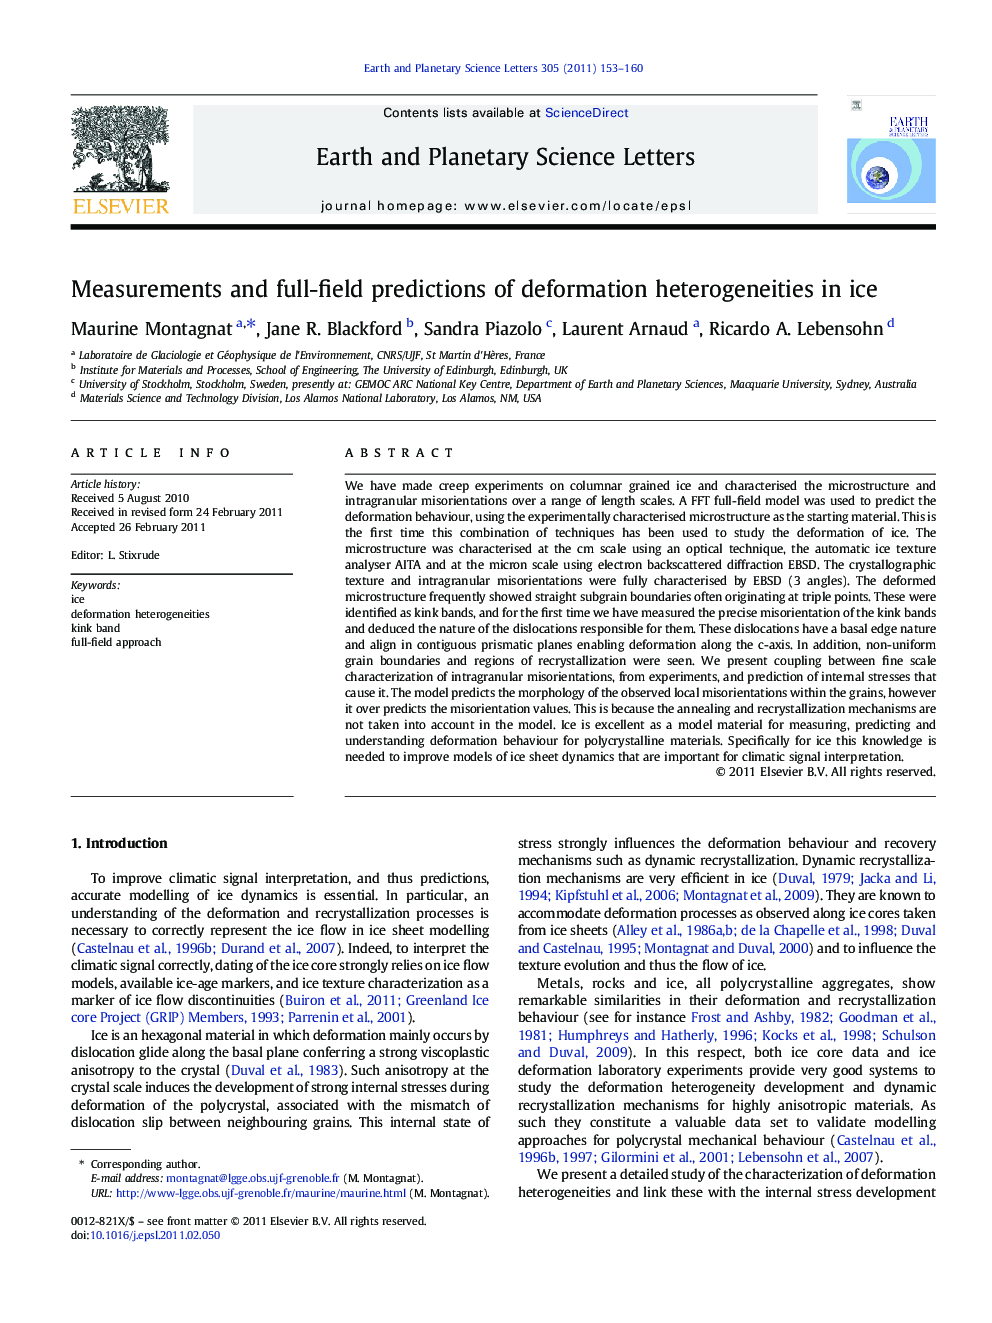 Measurements and full-field predictions of deformation heterogeneities in ice